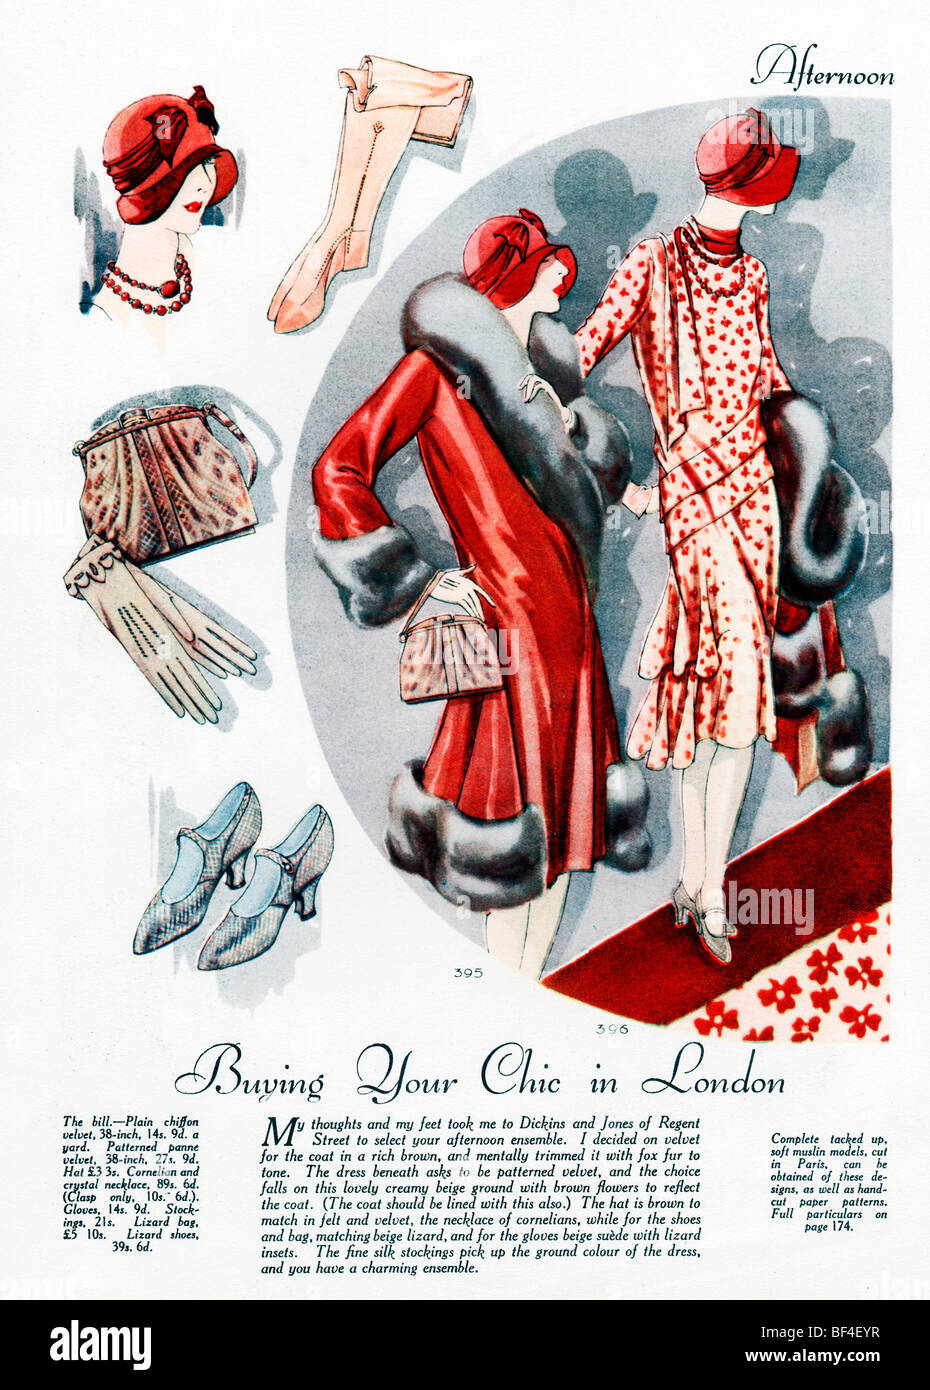 Après-midi, 1926 Accessoires de mode anglais, acheter votre chic à Londres avec un voyage à Dickins & Jones, de Regent Street Banque D'Images